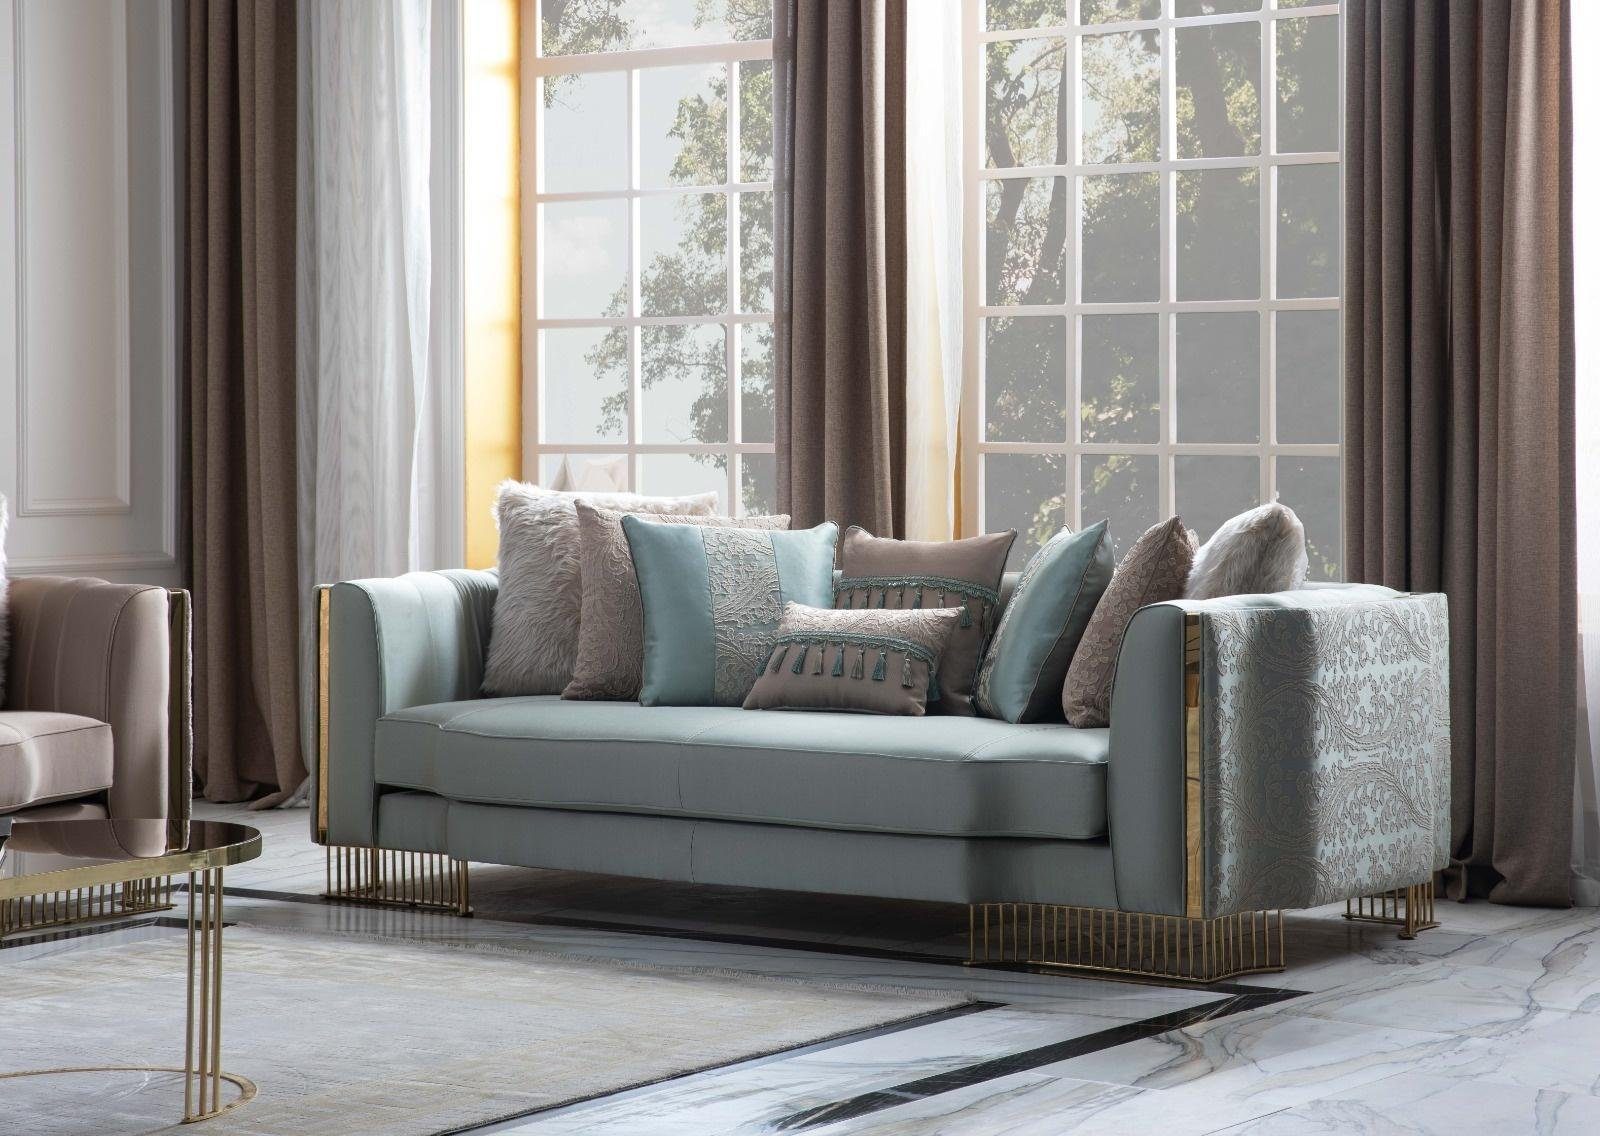 JVmoebel 3-Sitzer Turkis Couch Dreisitzer Couchen Möbel Sofa Elegante Villen Einrichtung, 1 Teile, Made in Europa